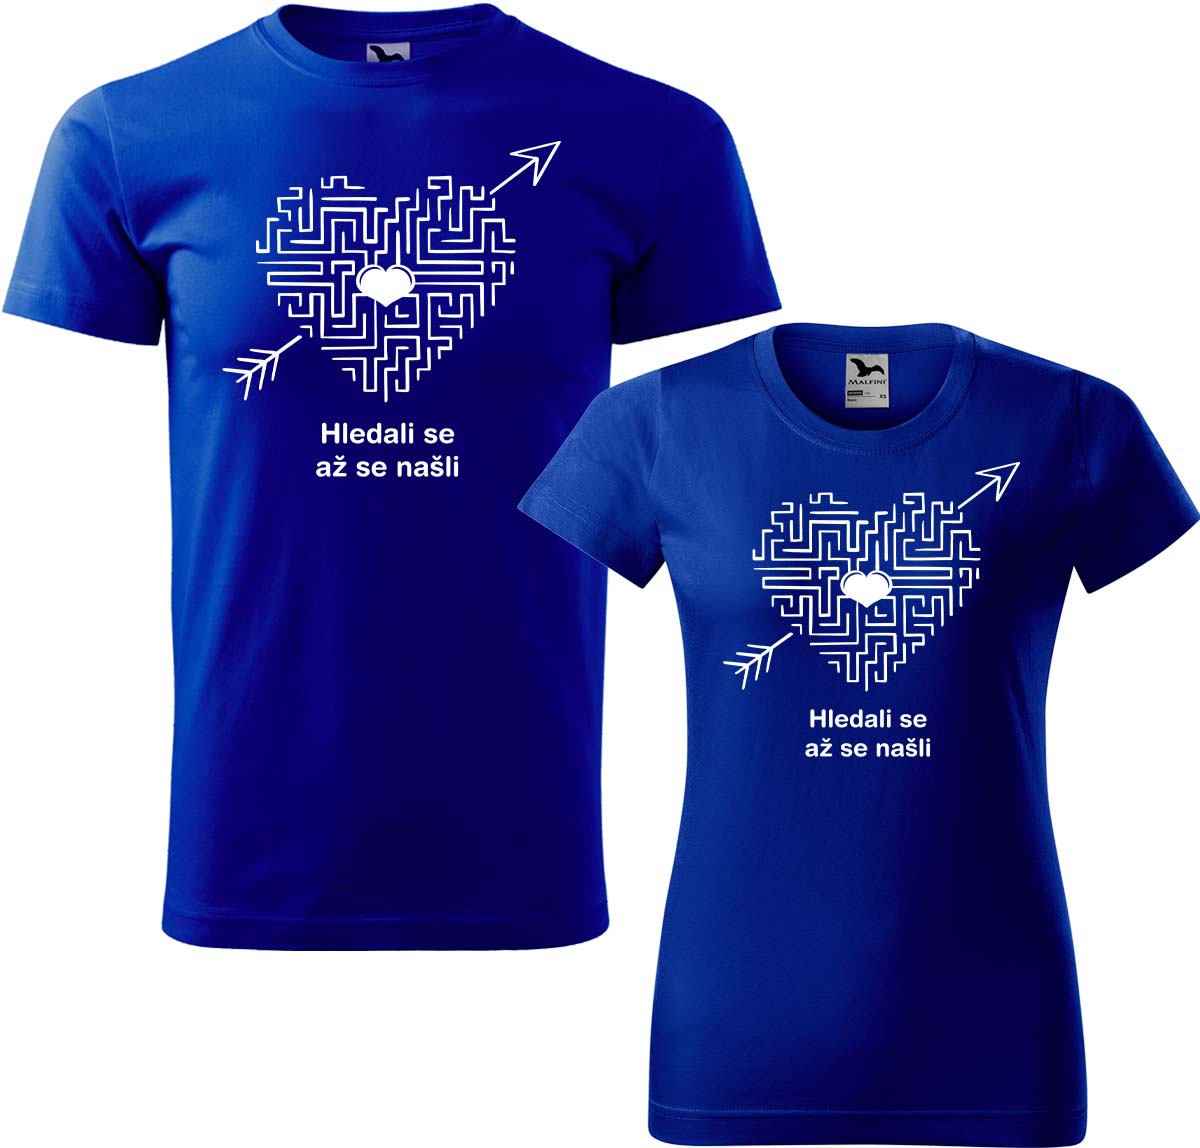 Trička pro páry - Hledali se, až se našli (srdce) Barva: Královská modrá (05), Velikost dámské tričko: S, Velikost pánské tričko: L